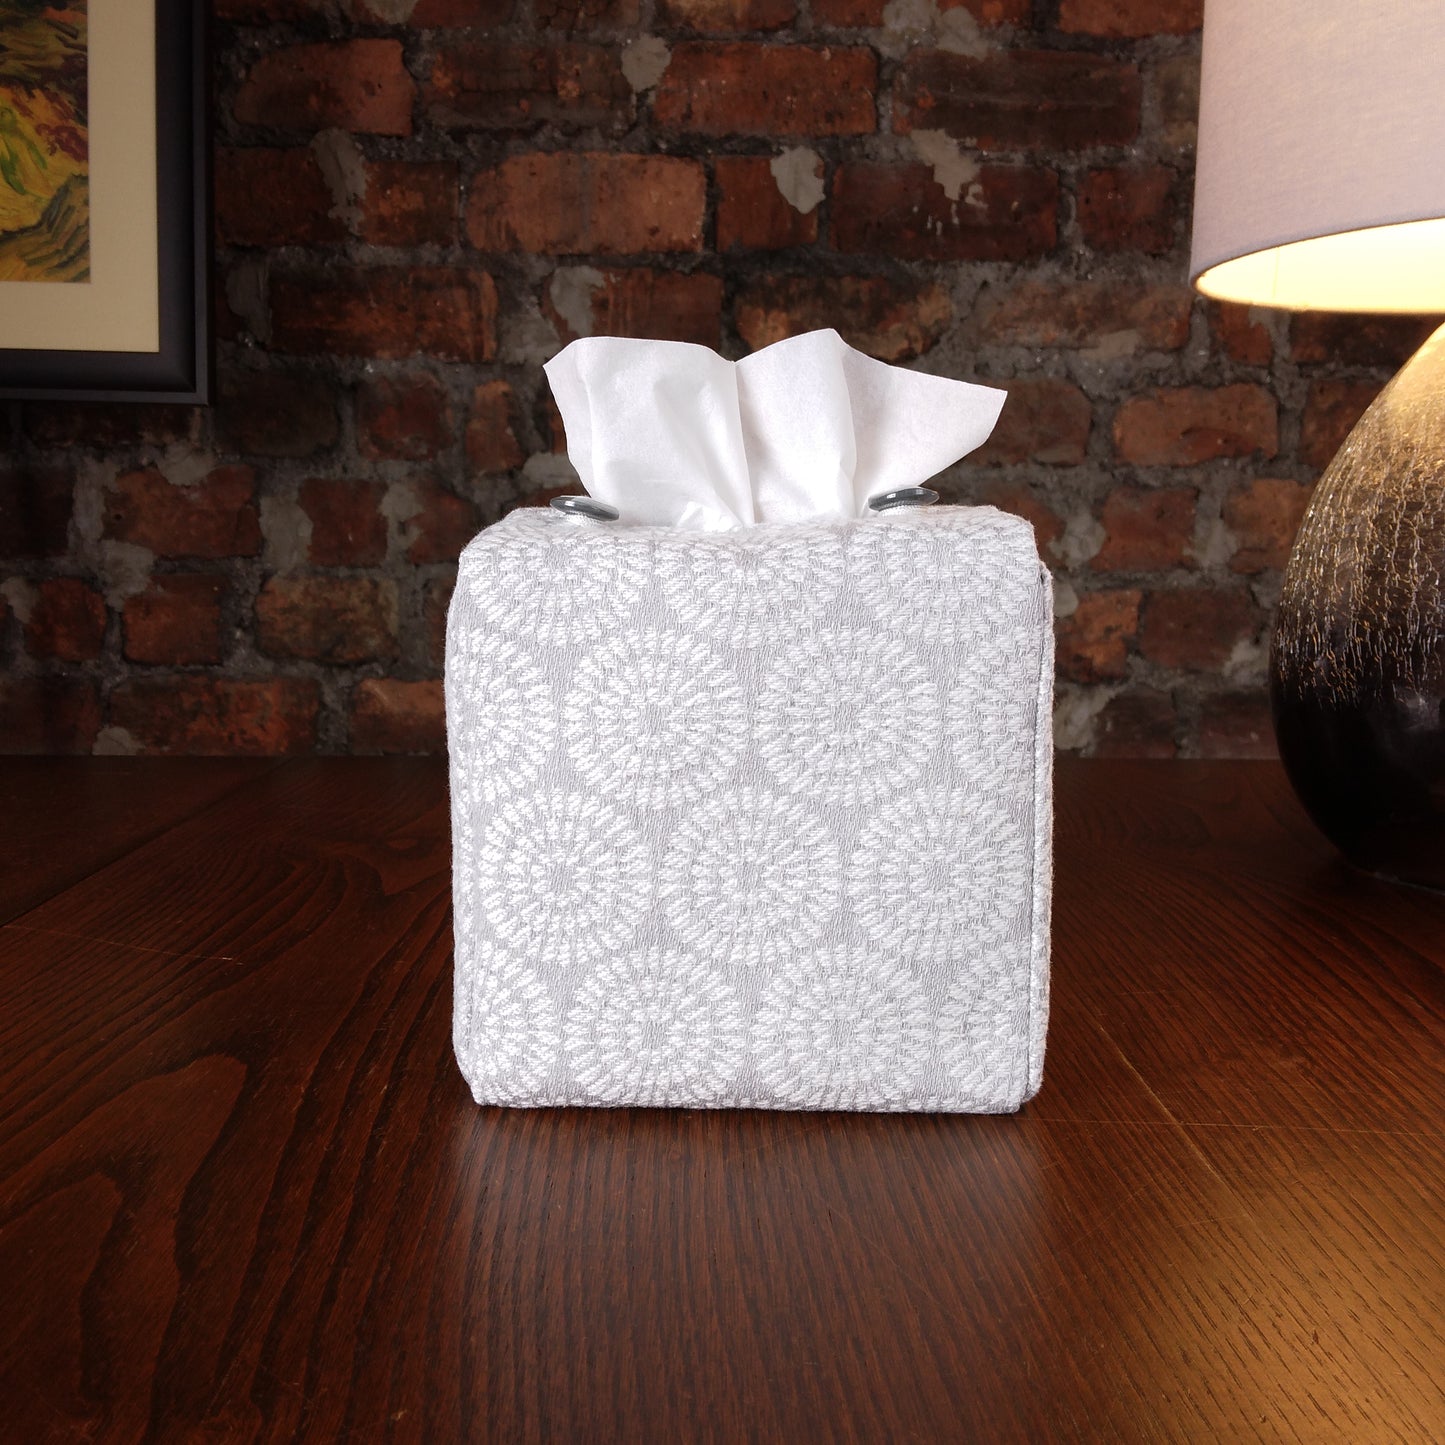 Cube Fabric Tissue Box Cover - Retro Design on Light Grey